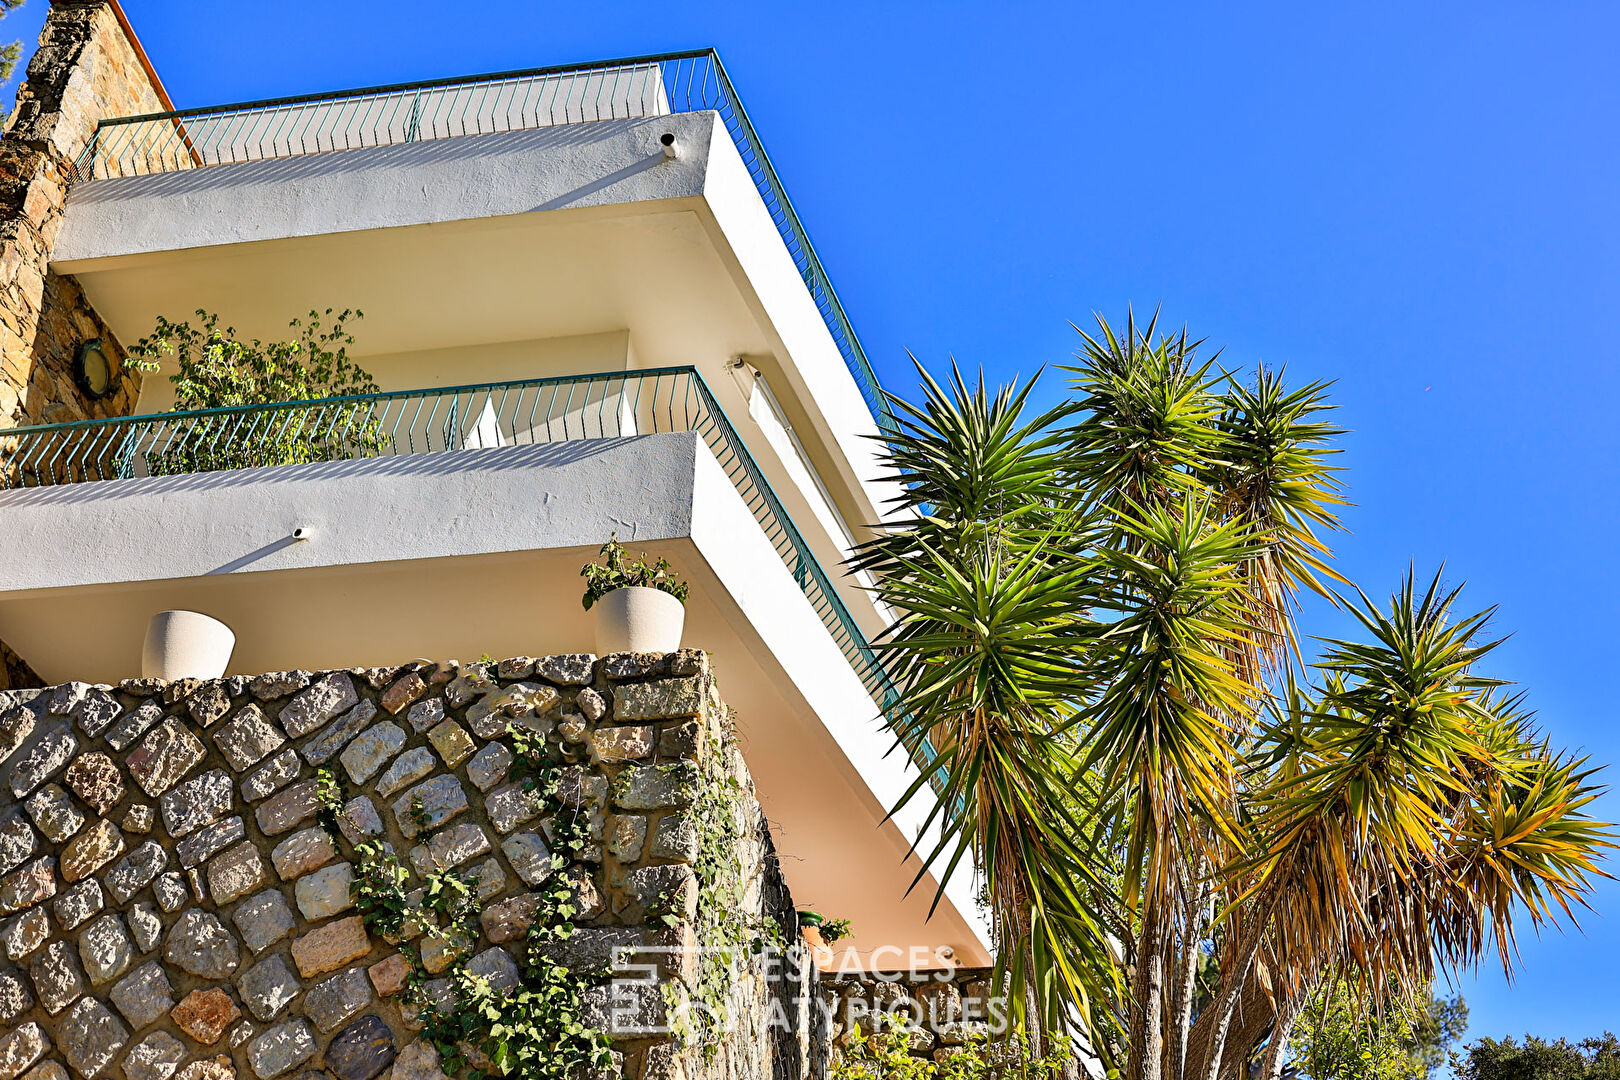 Vue mer et rooftop pour cette villa aux inspirations californiennes